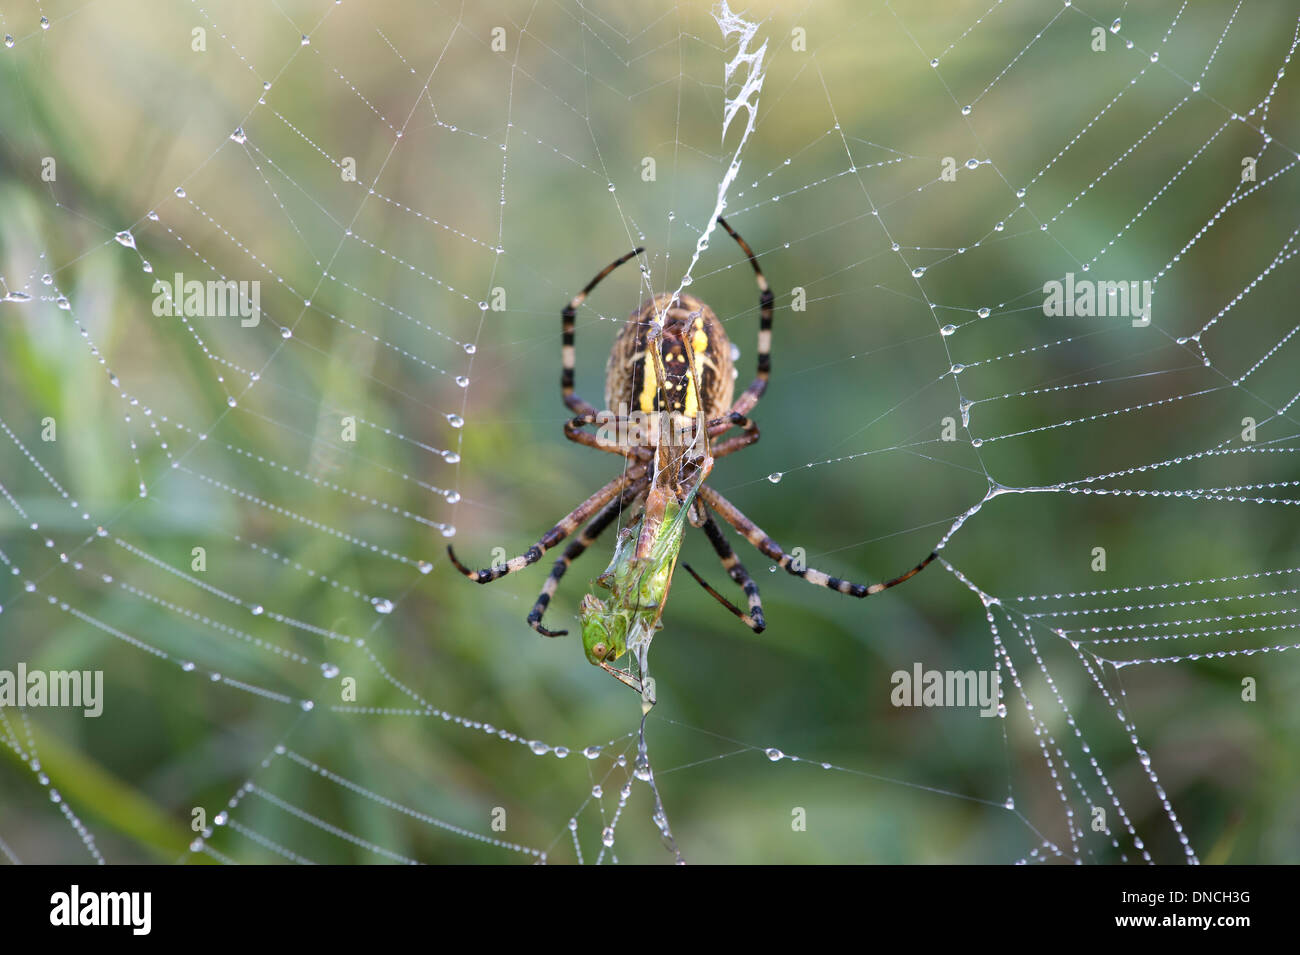 Wasp spider (Argiope bruennichi) with prey, Switzerland, Europe Stock Photo